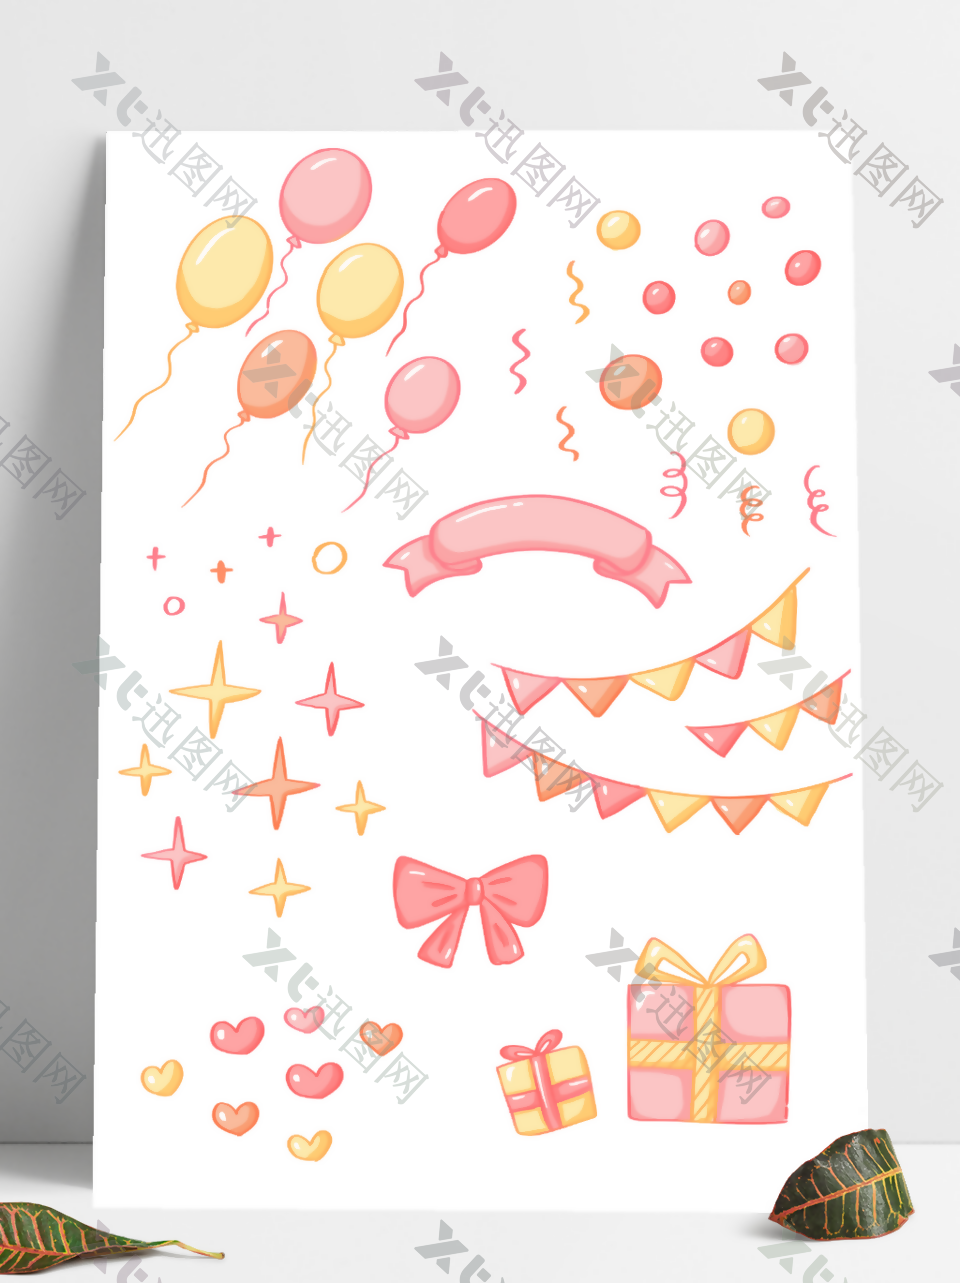 清新浪漫粉色气球星星爱心礼物手账素材装饰